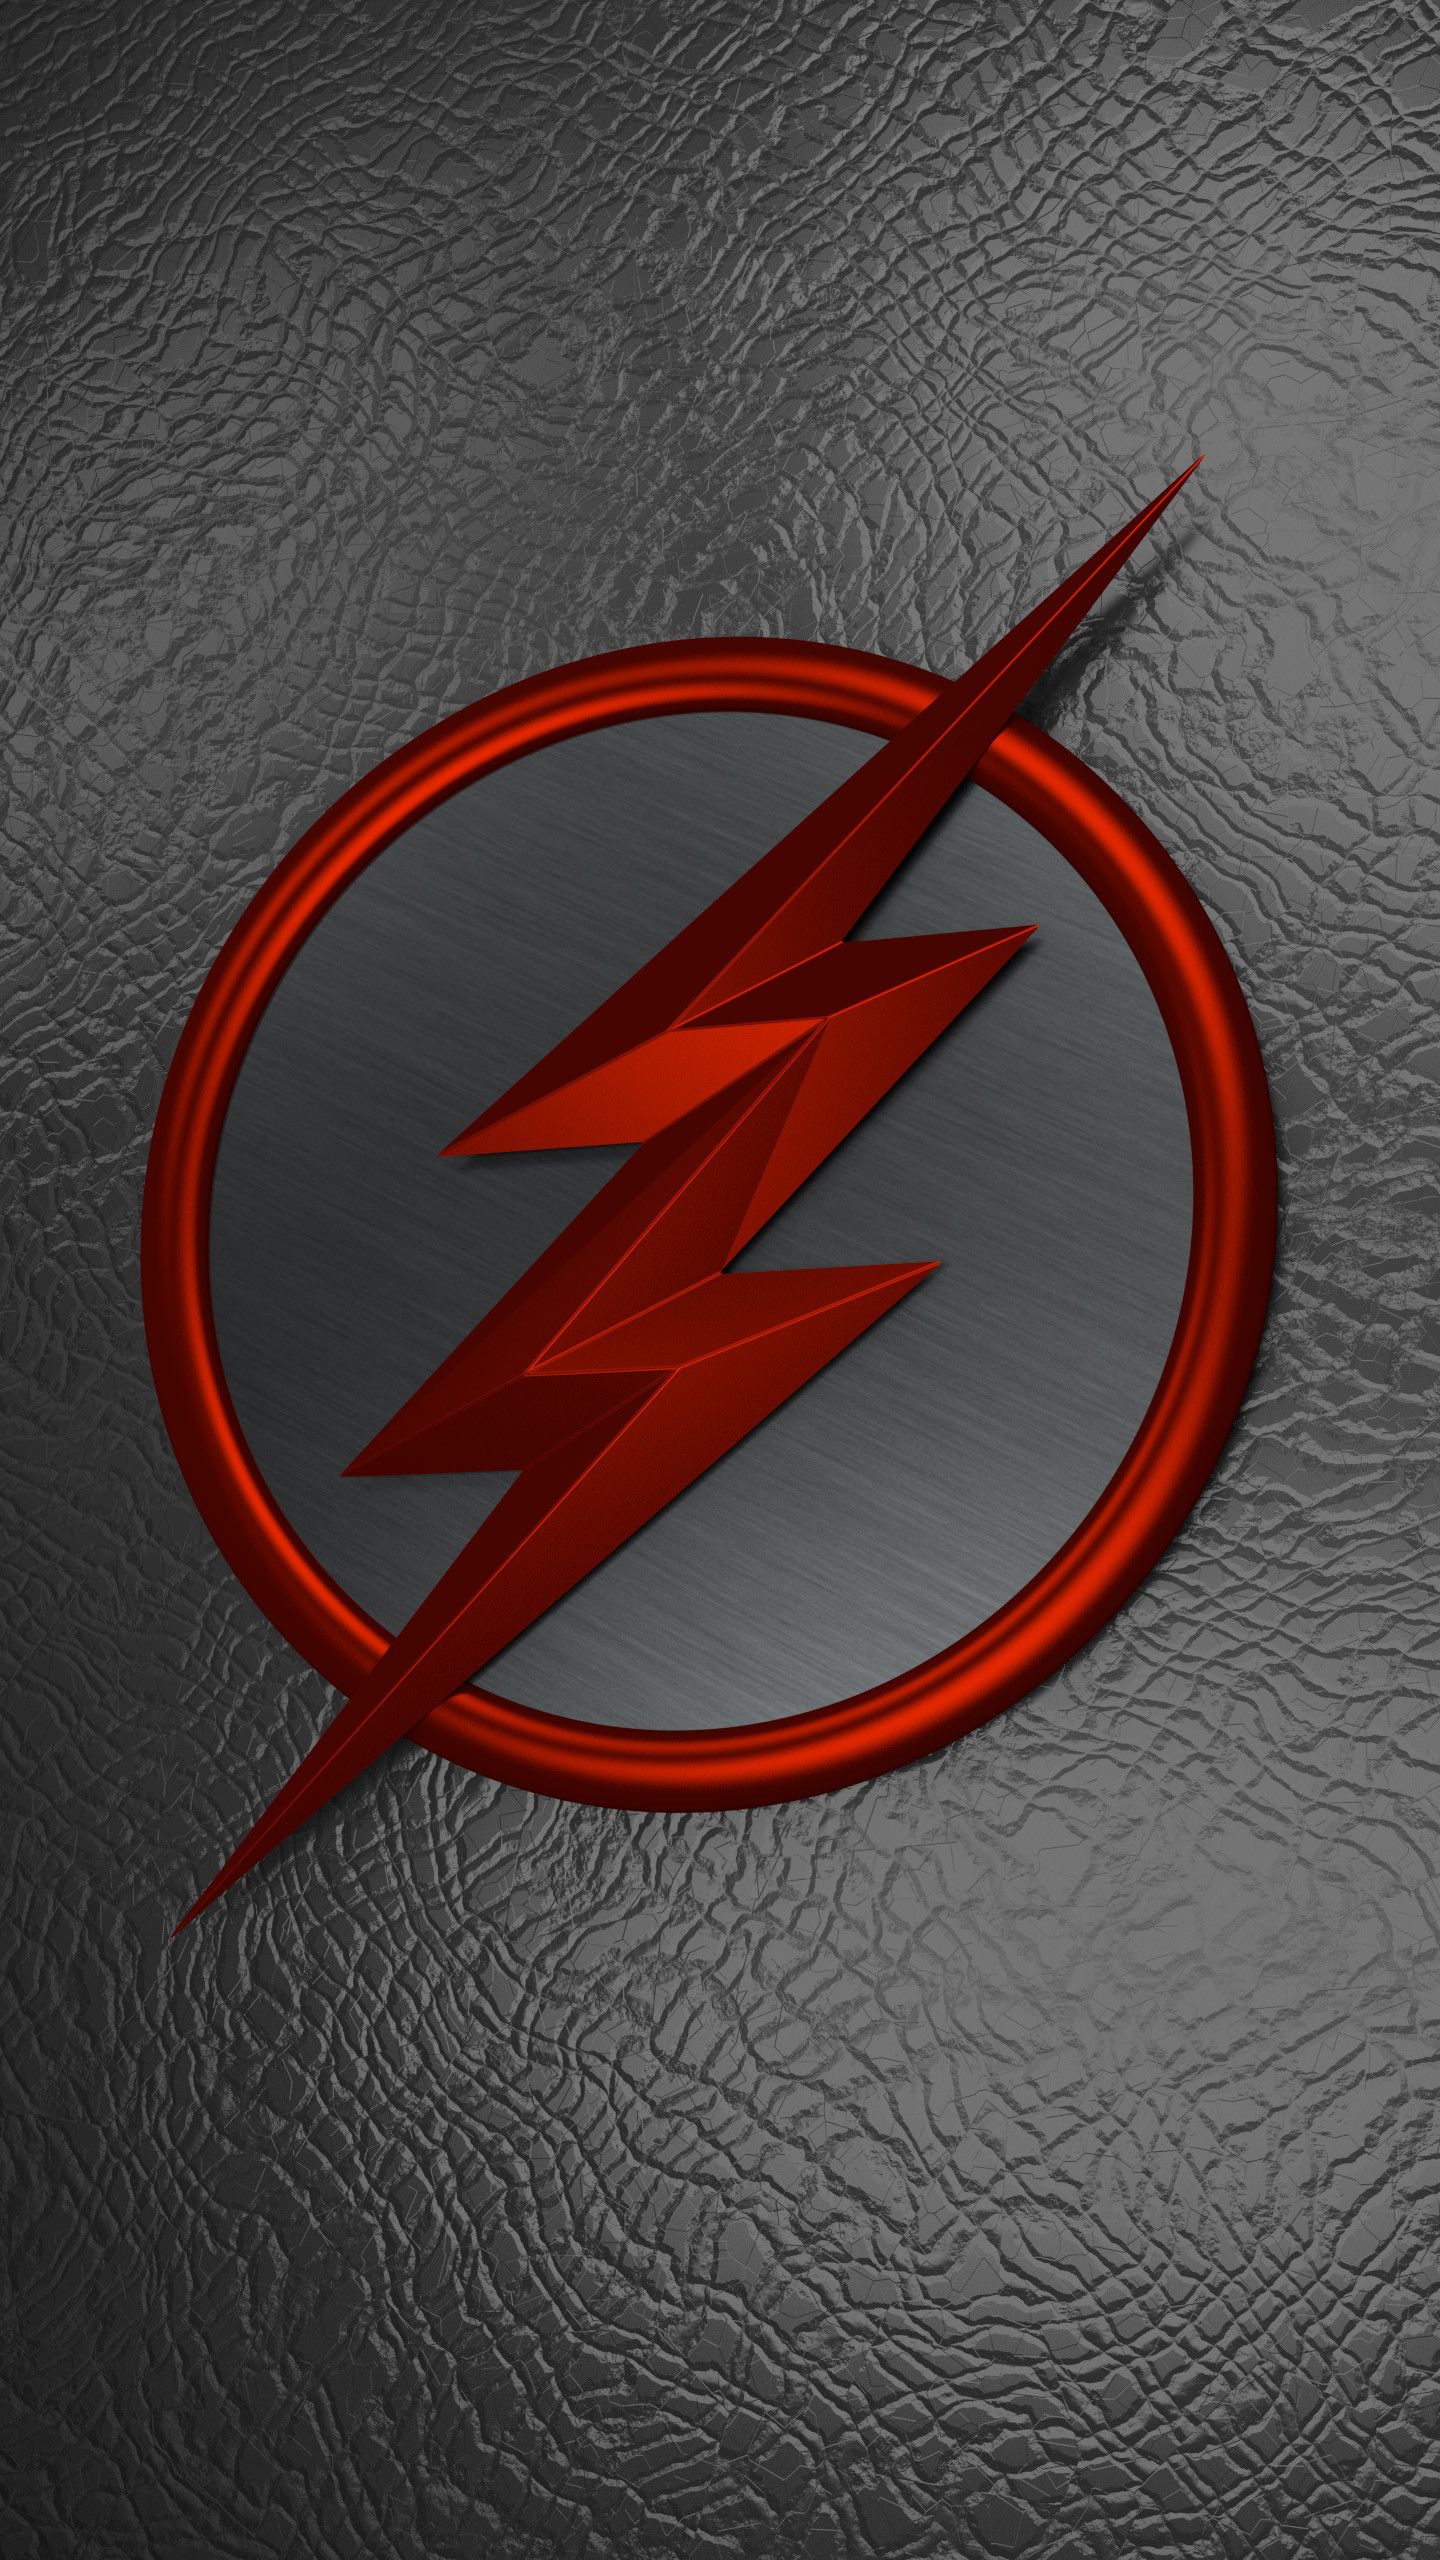 Reverse Flash Logo Wallpapers